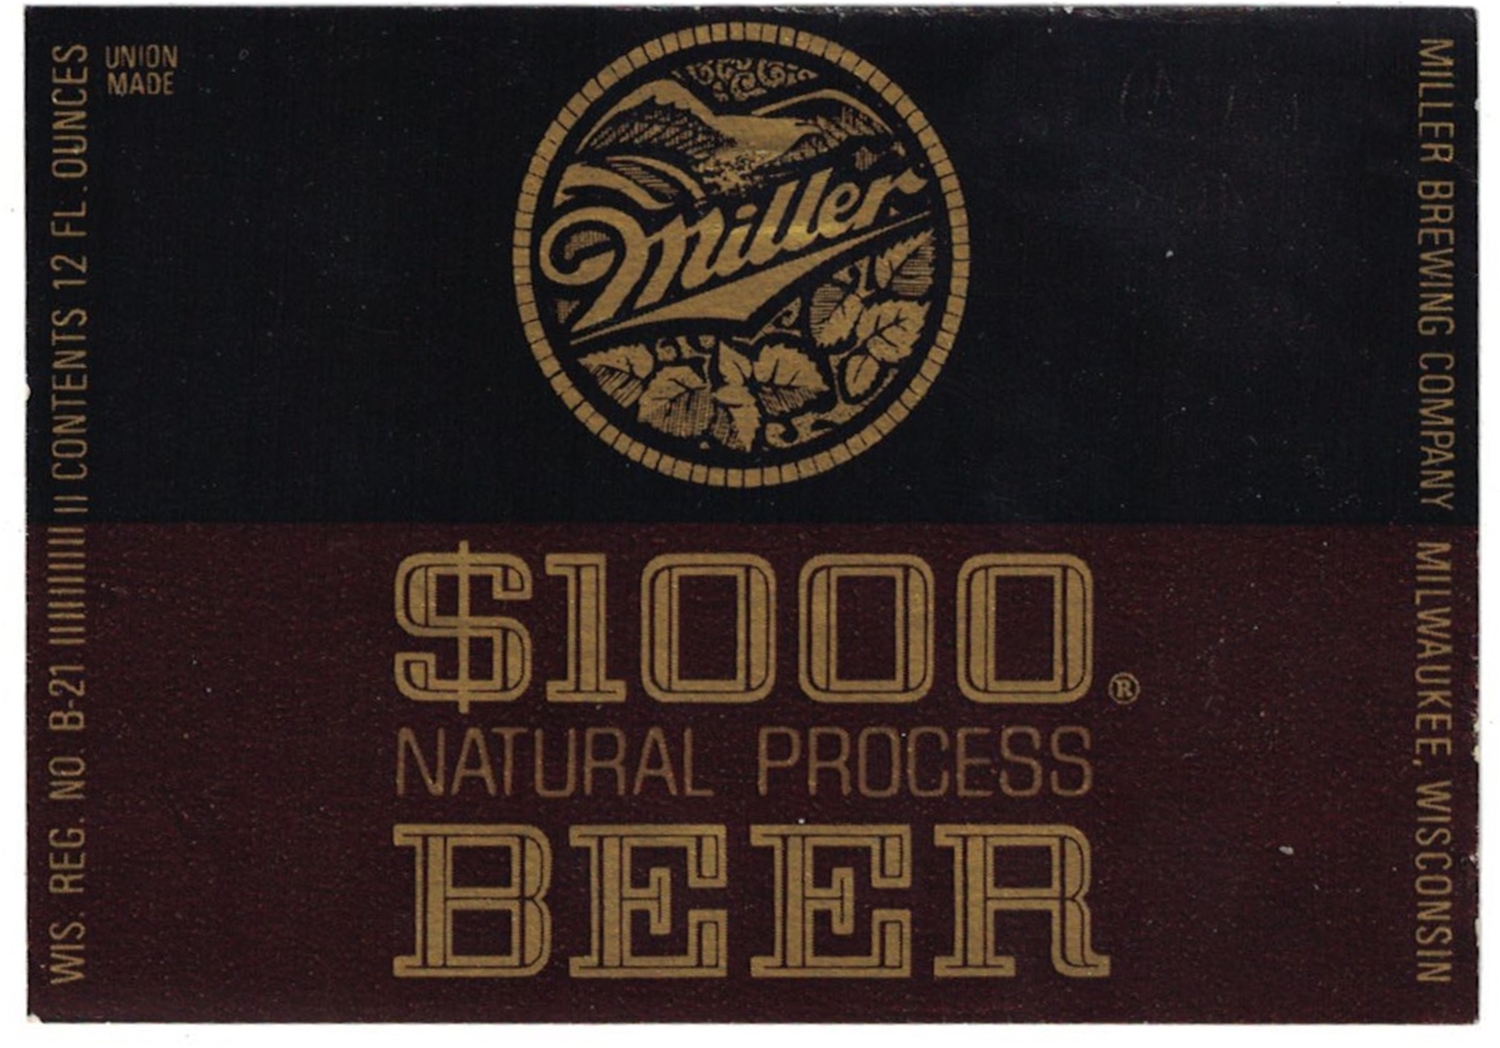 Miller $1000 Natural Process Beer Label